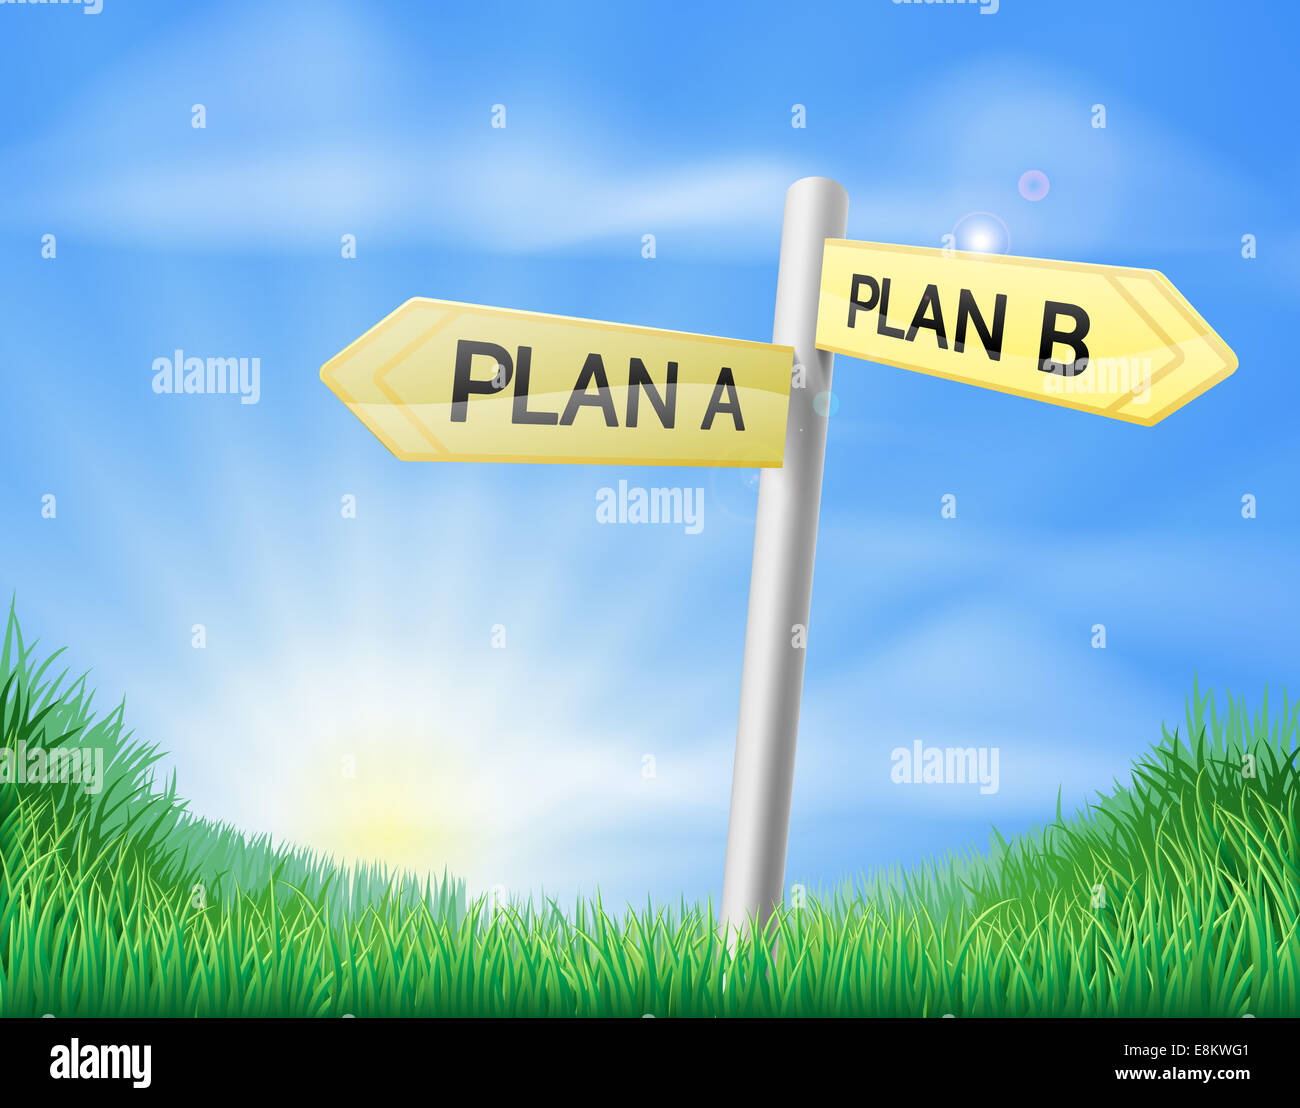 Un plan B Plan signe dans un beau terrain vert de l'herbe luxuriante Banque D'Images